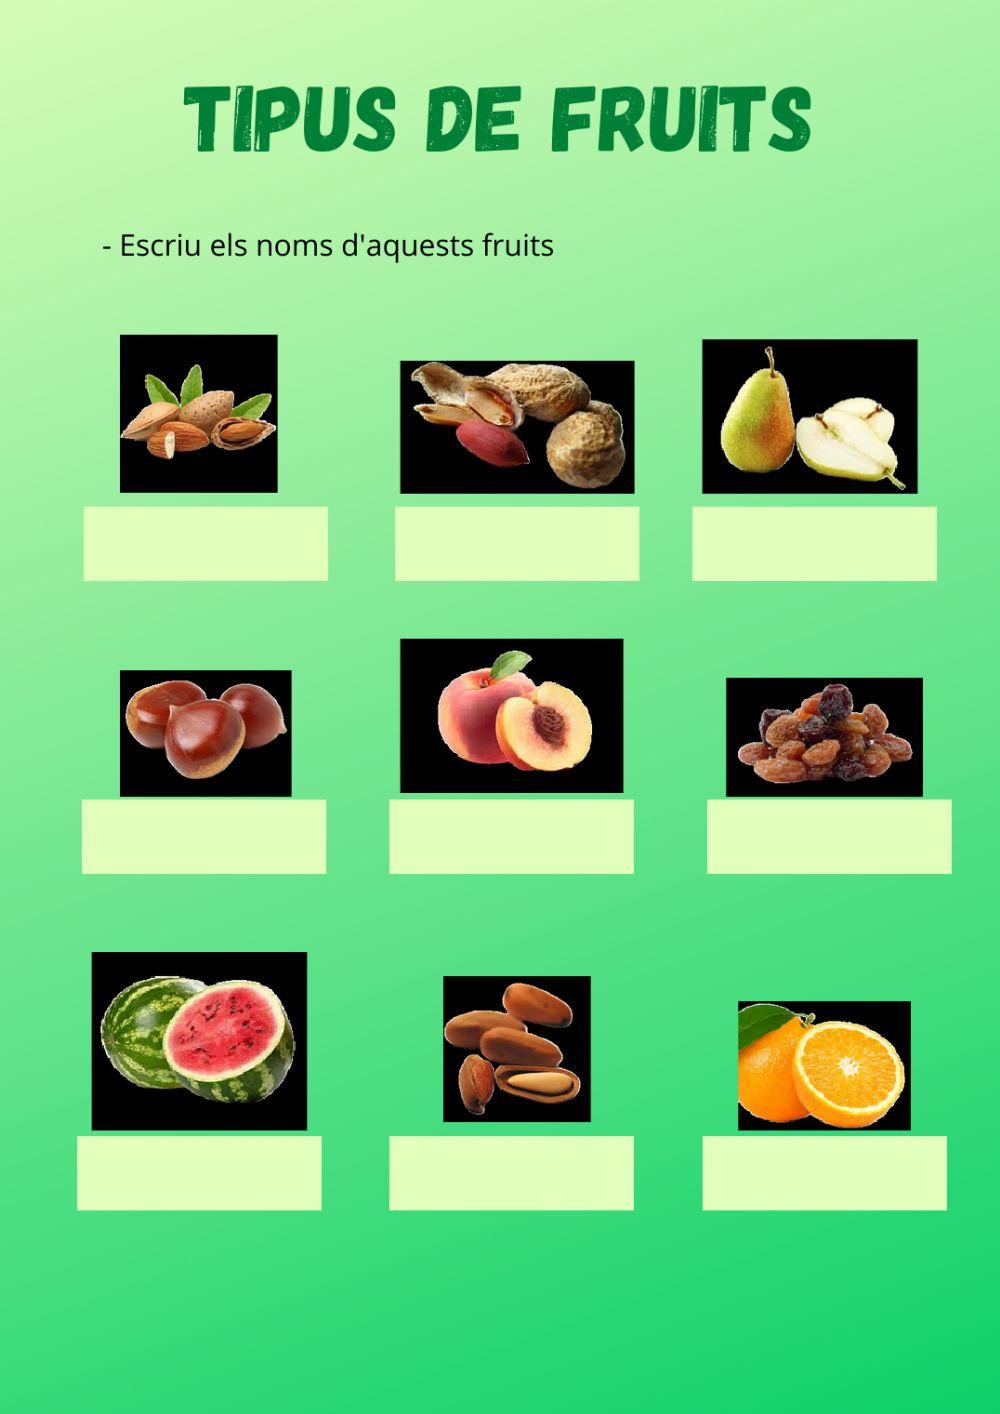 Tipus de fruits